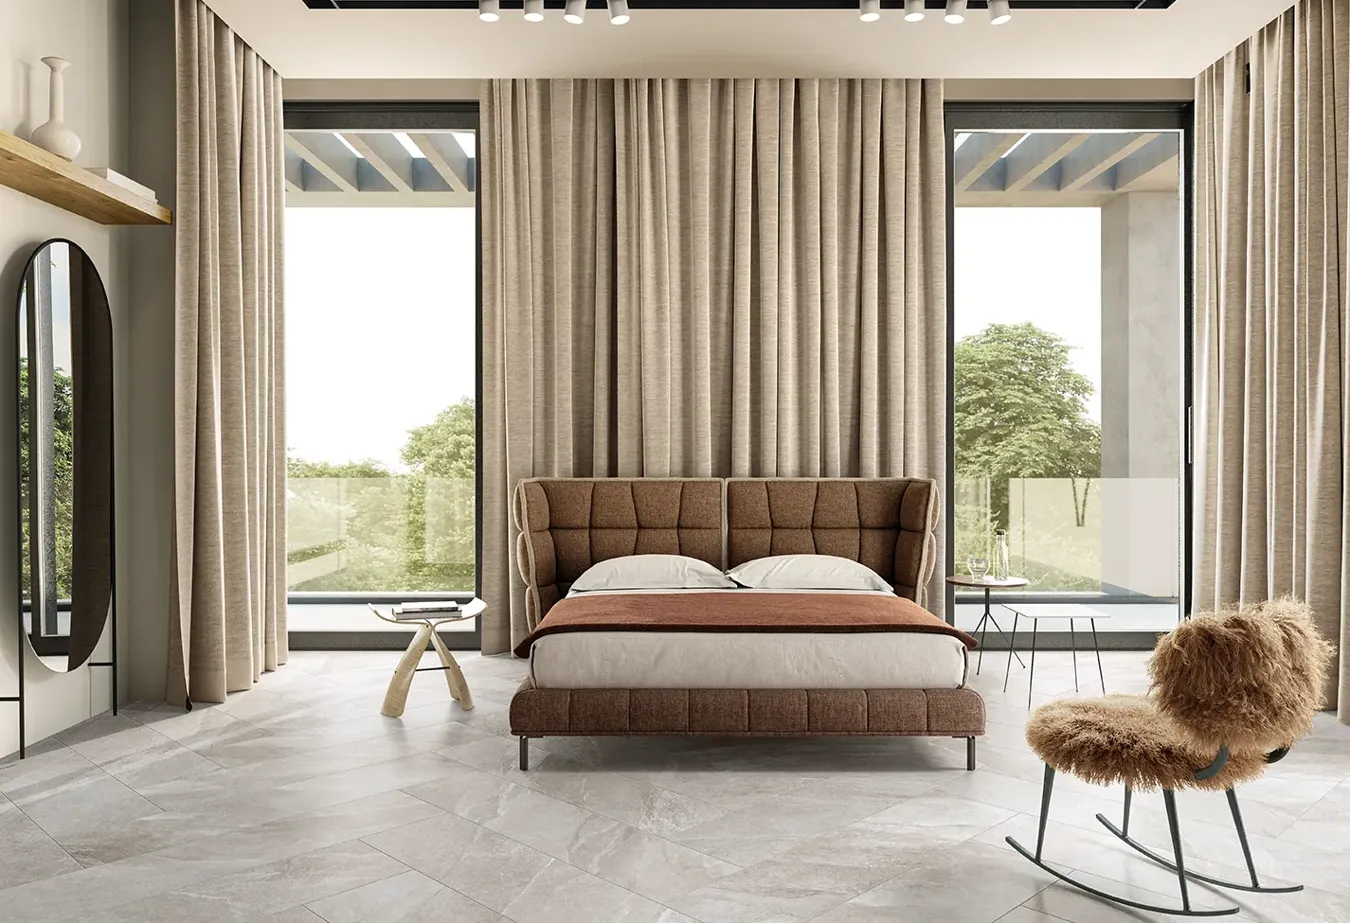 Camera da letto luminosa con pavimento effetto pietra collezione Ubik colore greige, letto capitonné e ampie finestre.